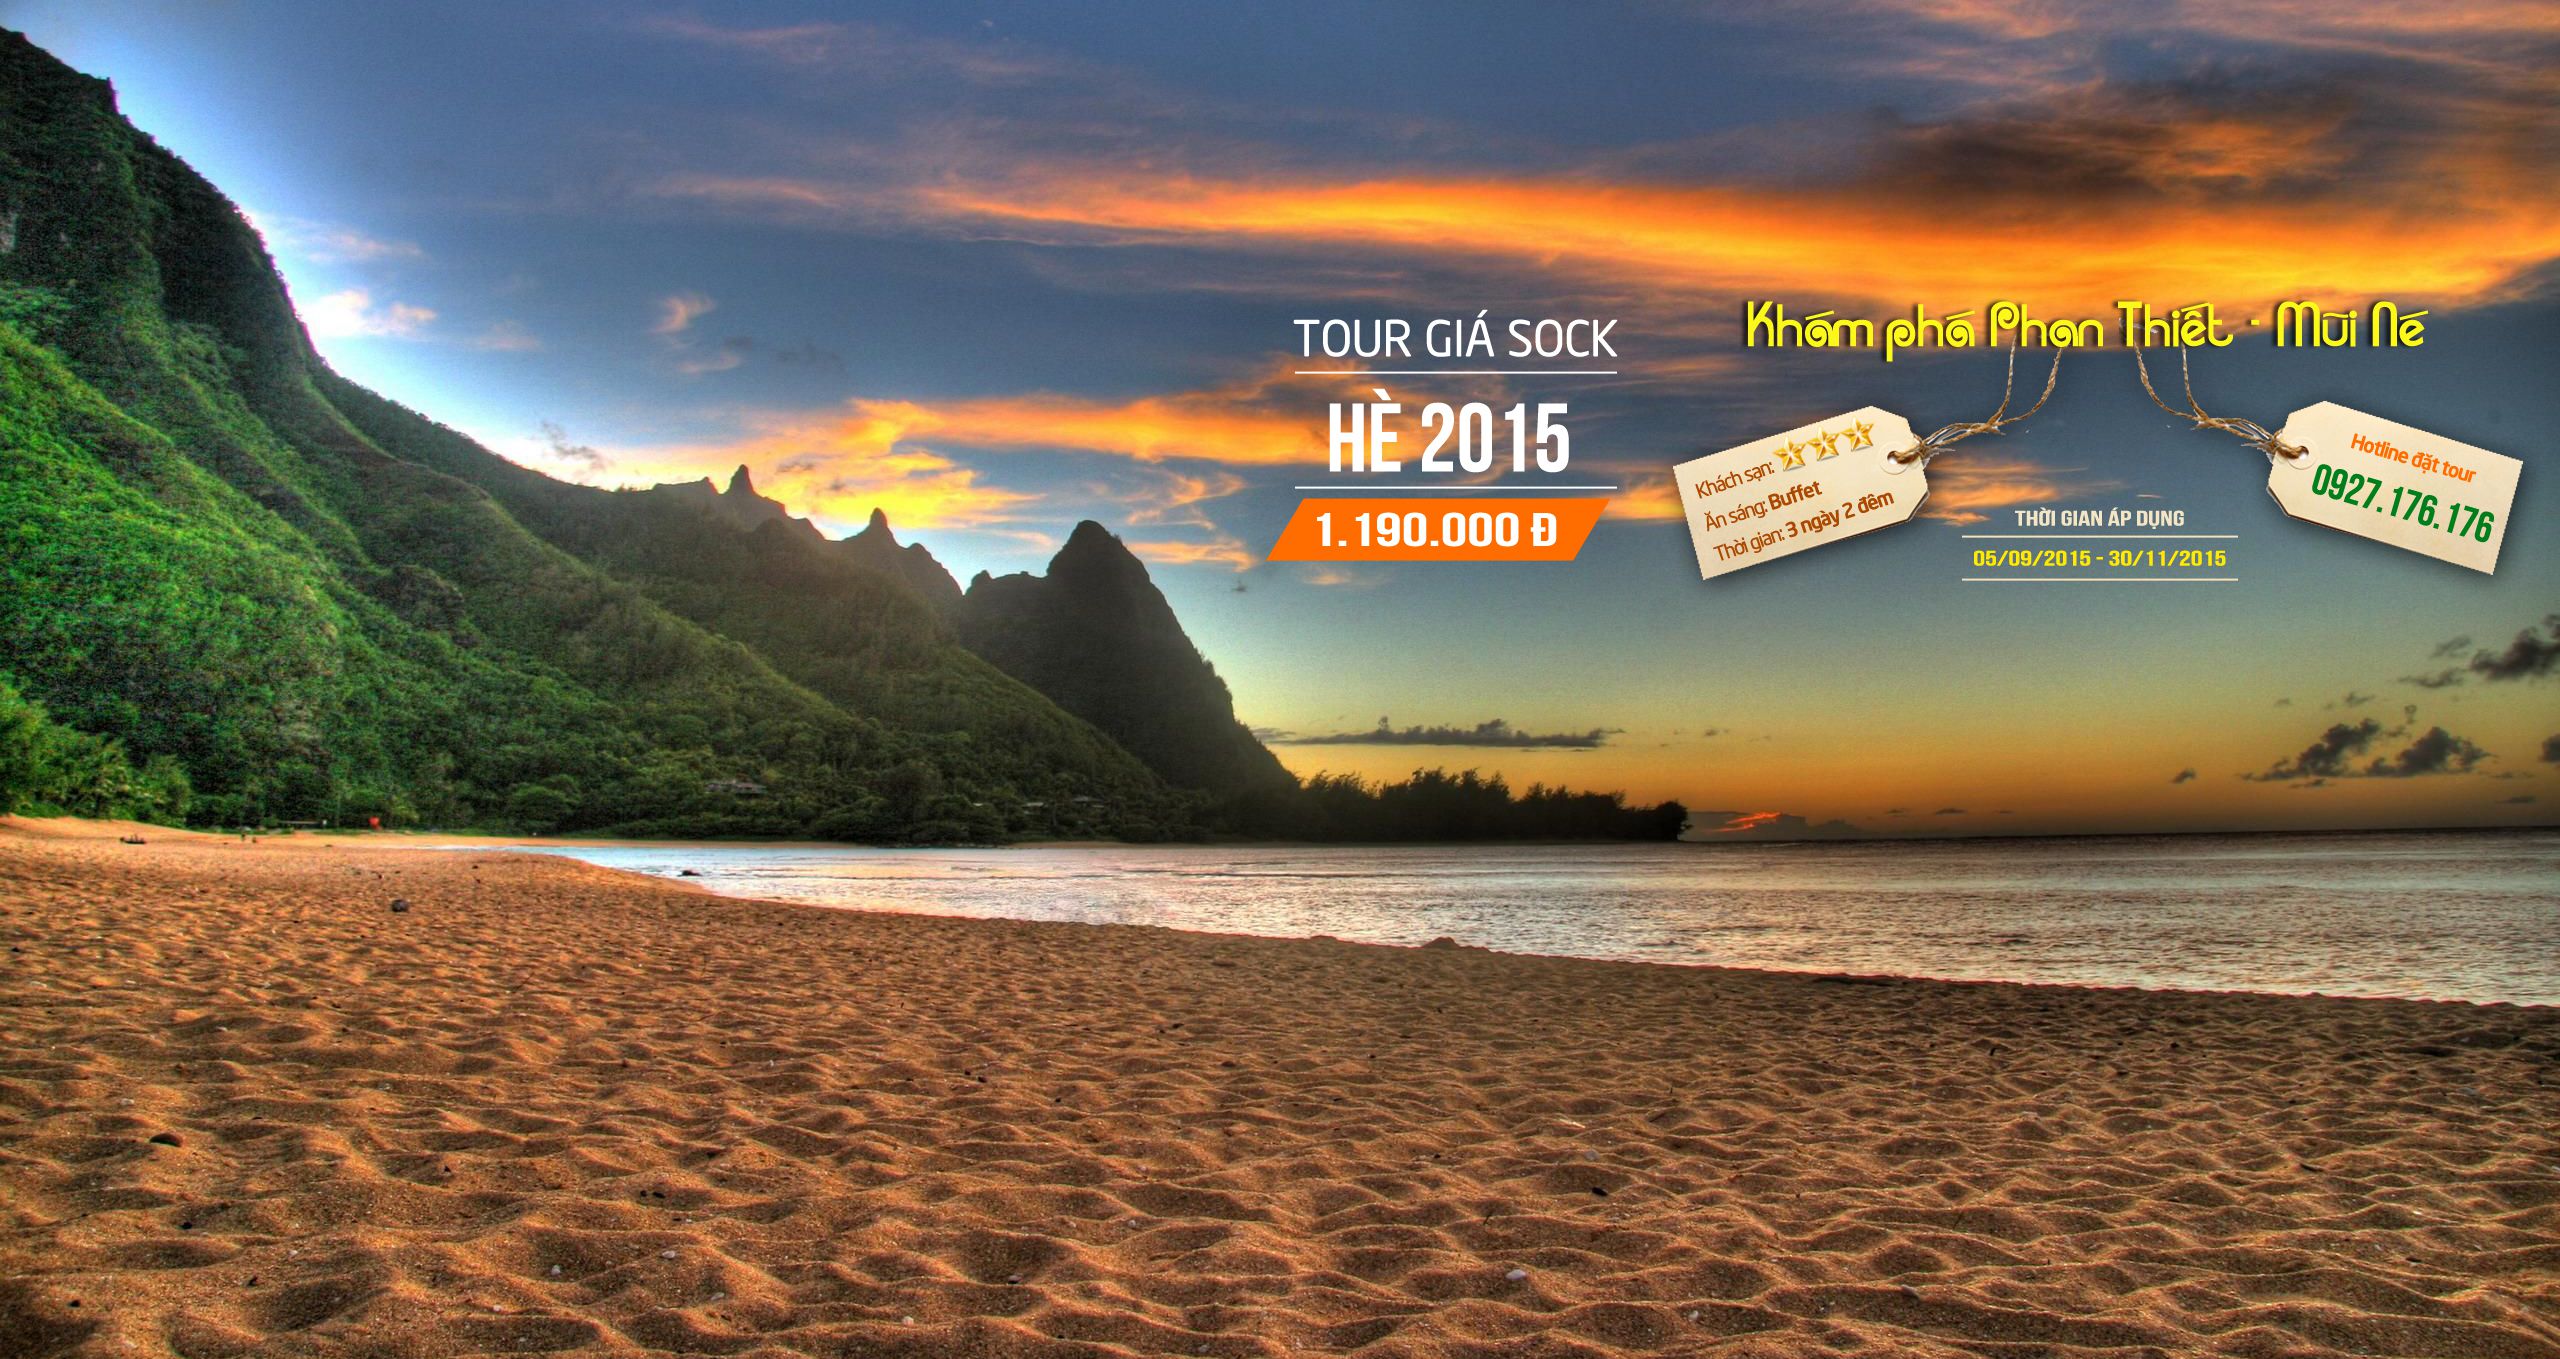 Tour Phan Thiết Mũi Né hè 2015 giá rẻ